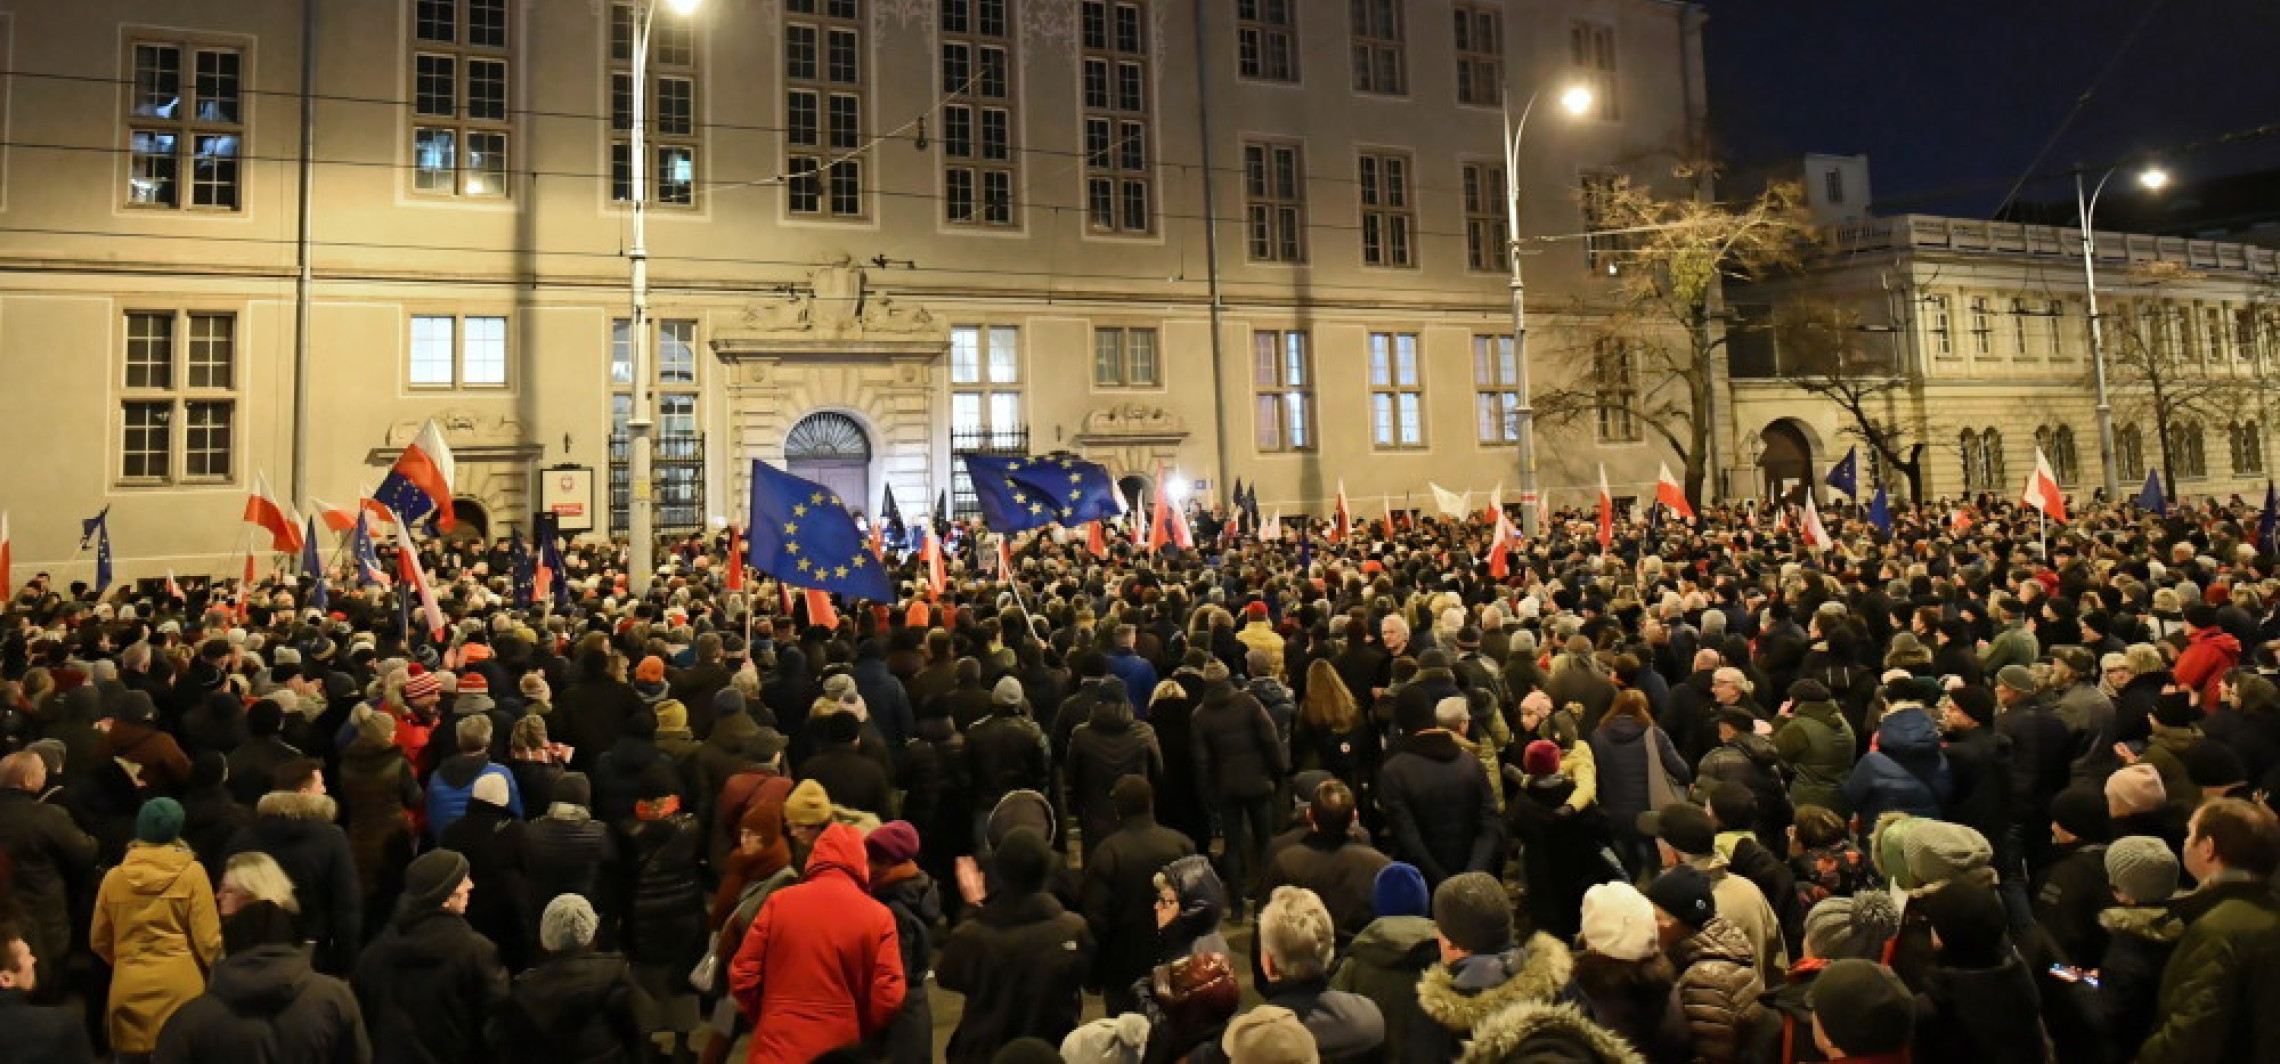 Kraj - Protesty w polskich miastach przeciwko zmianom w sądownictwie